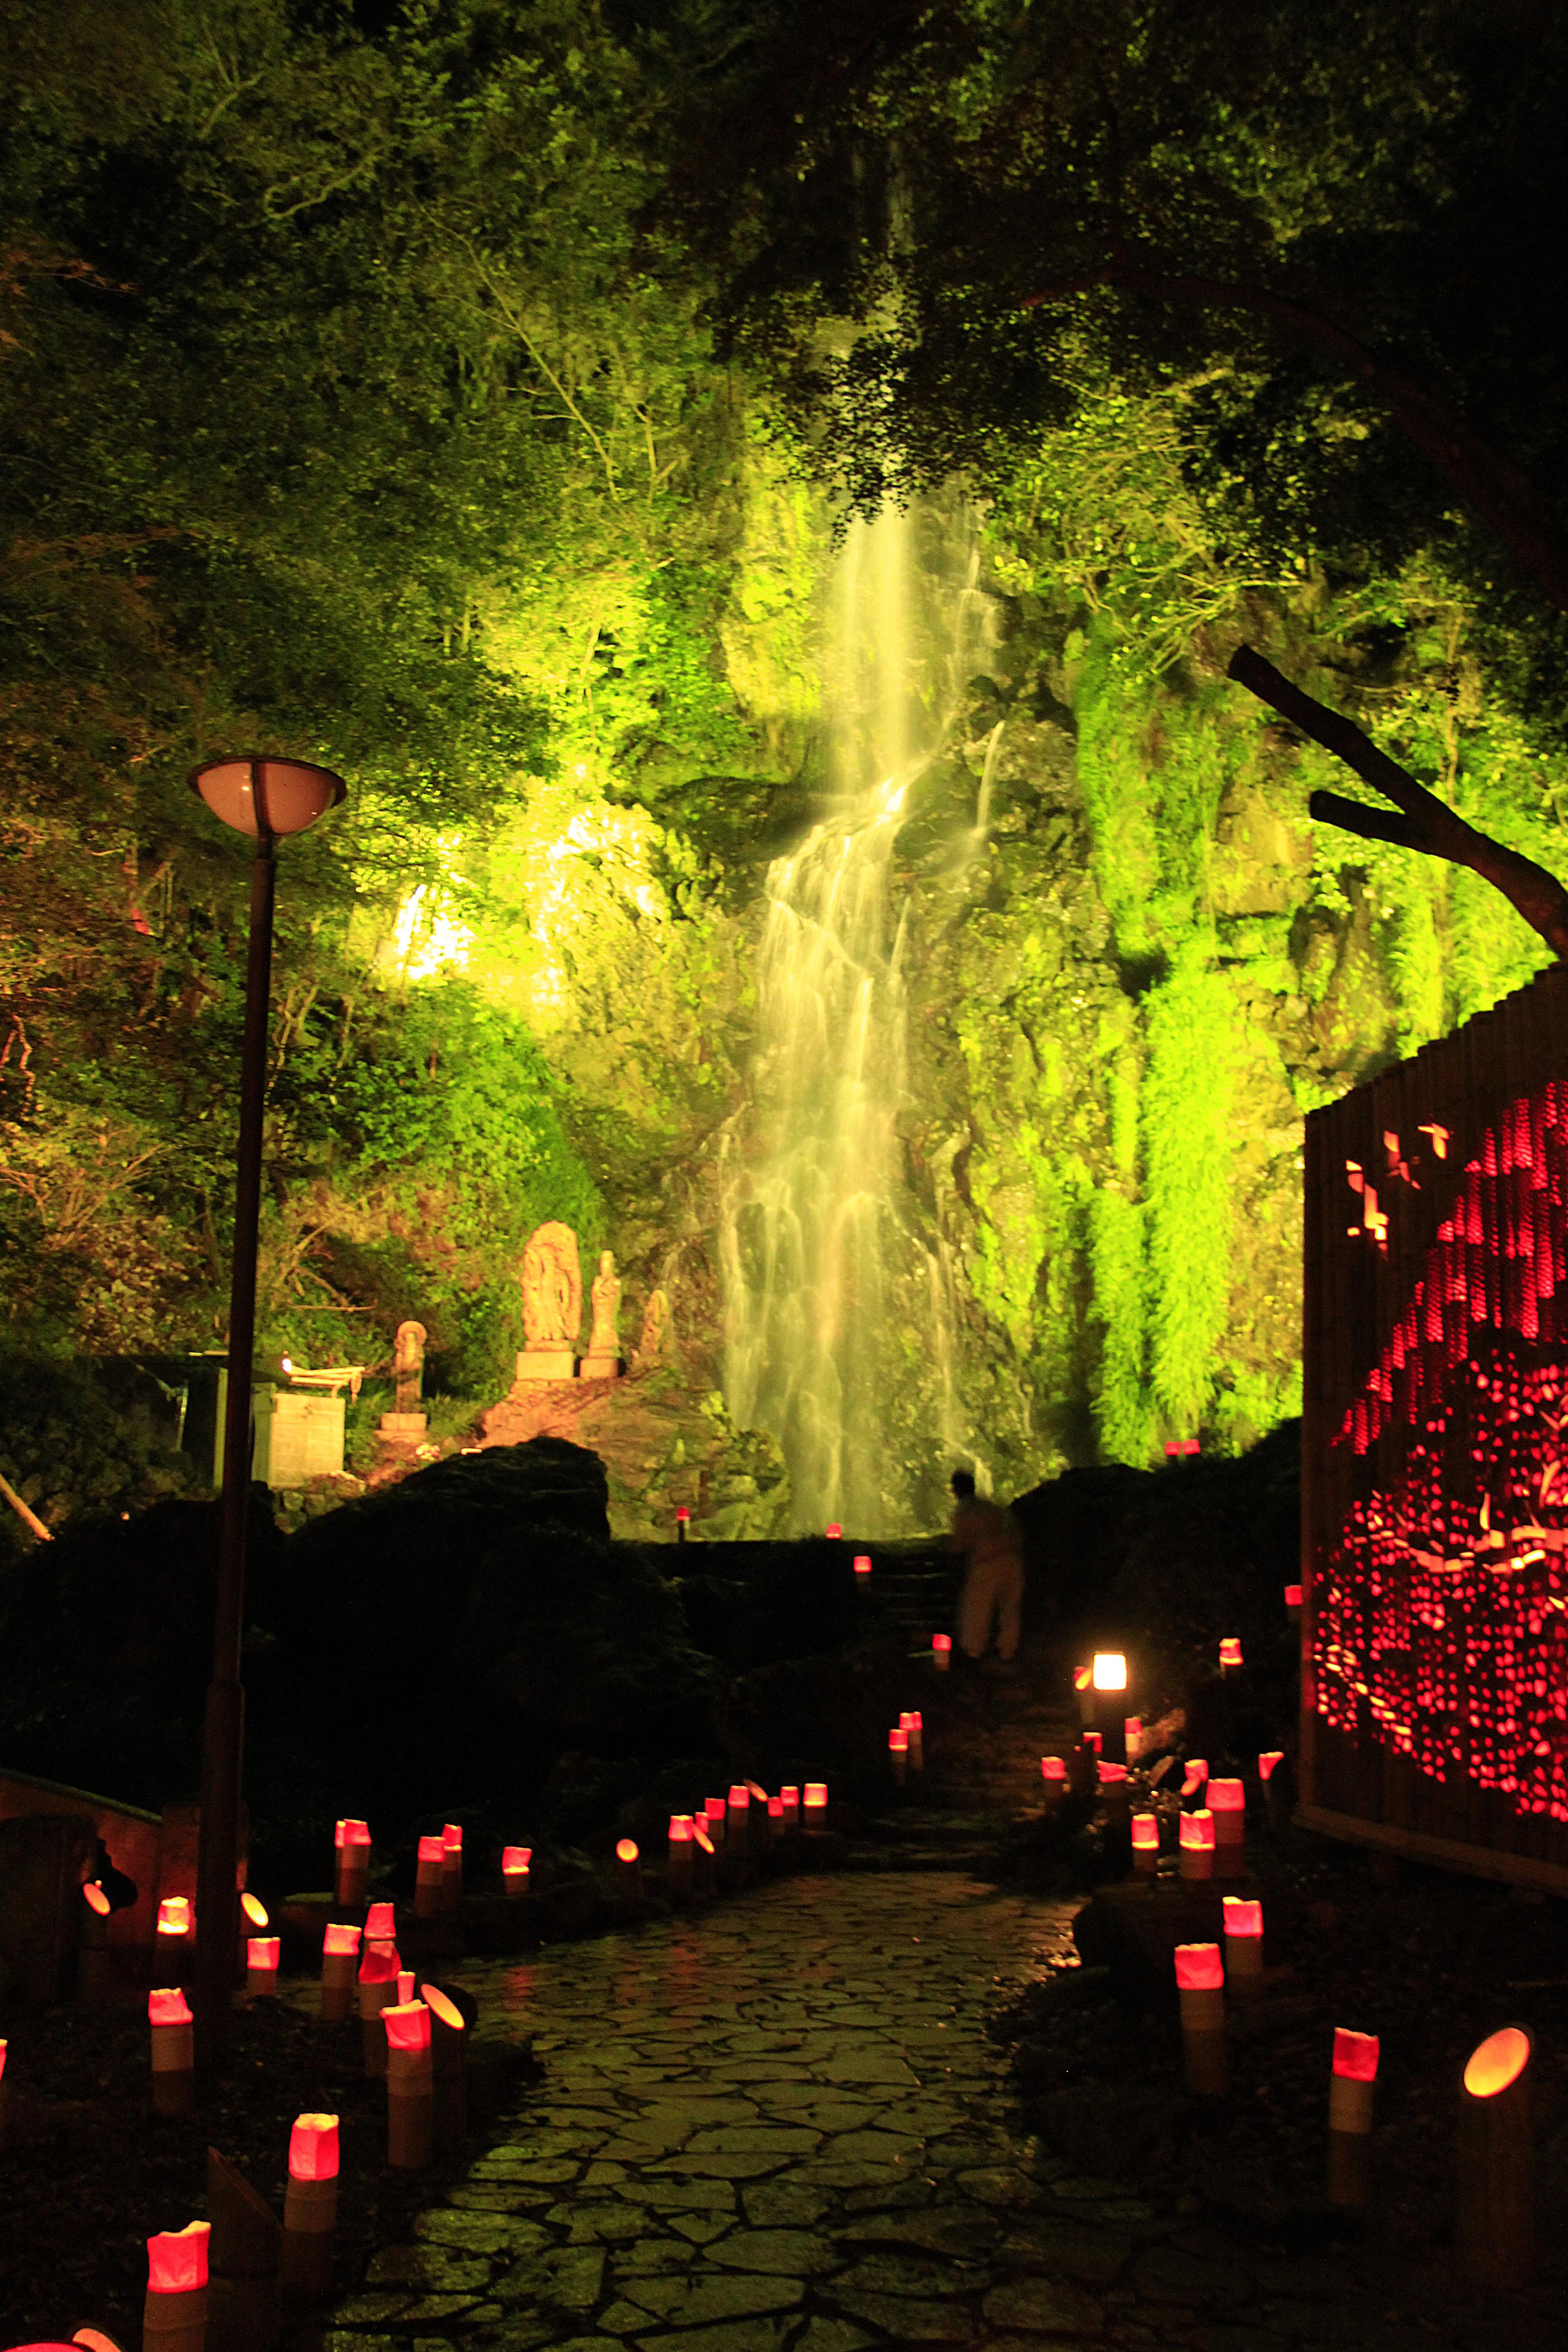 清水の滝と紅葉ライトアップ 清水竹灯り 九州への旅行や観光情報は九州旅ネット